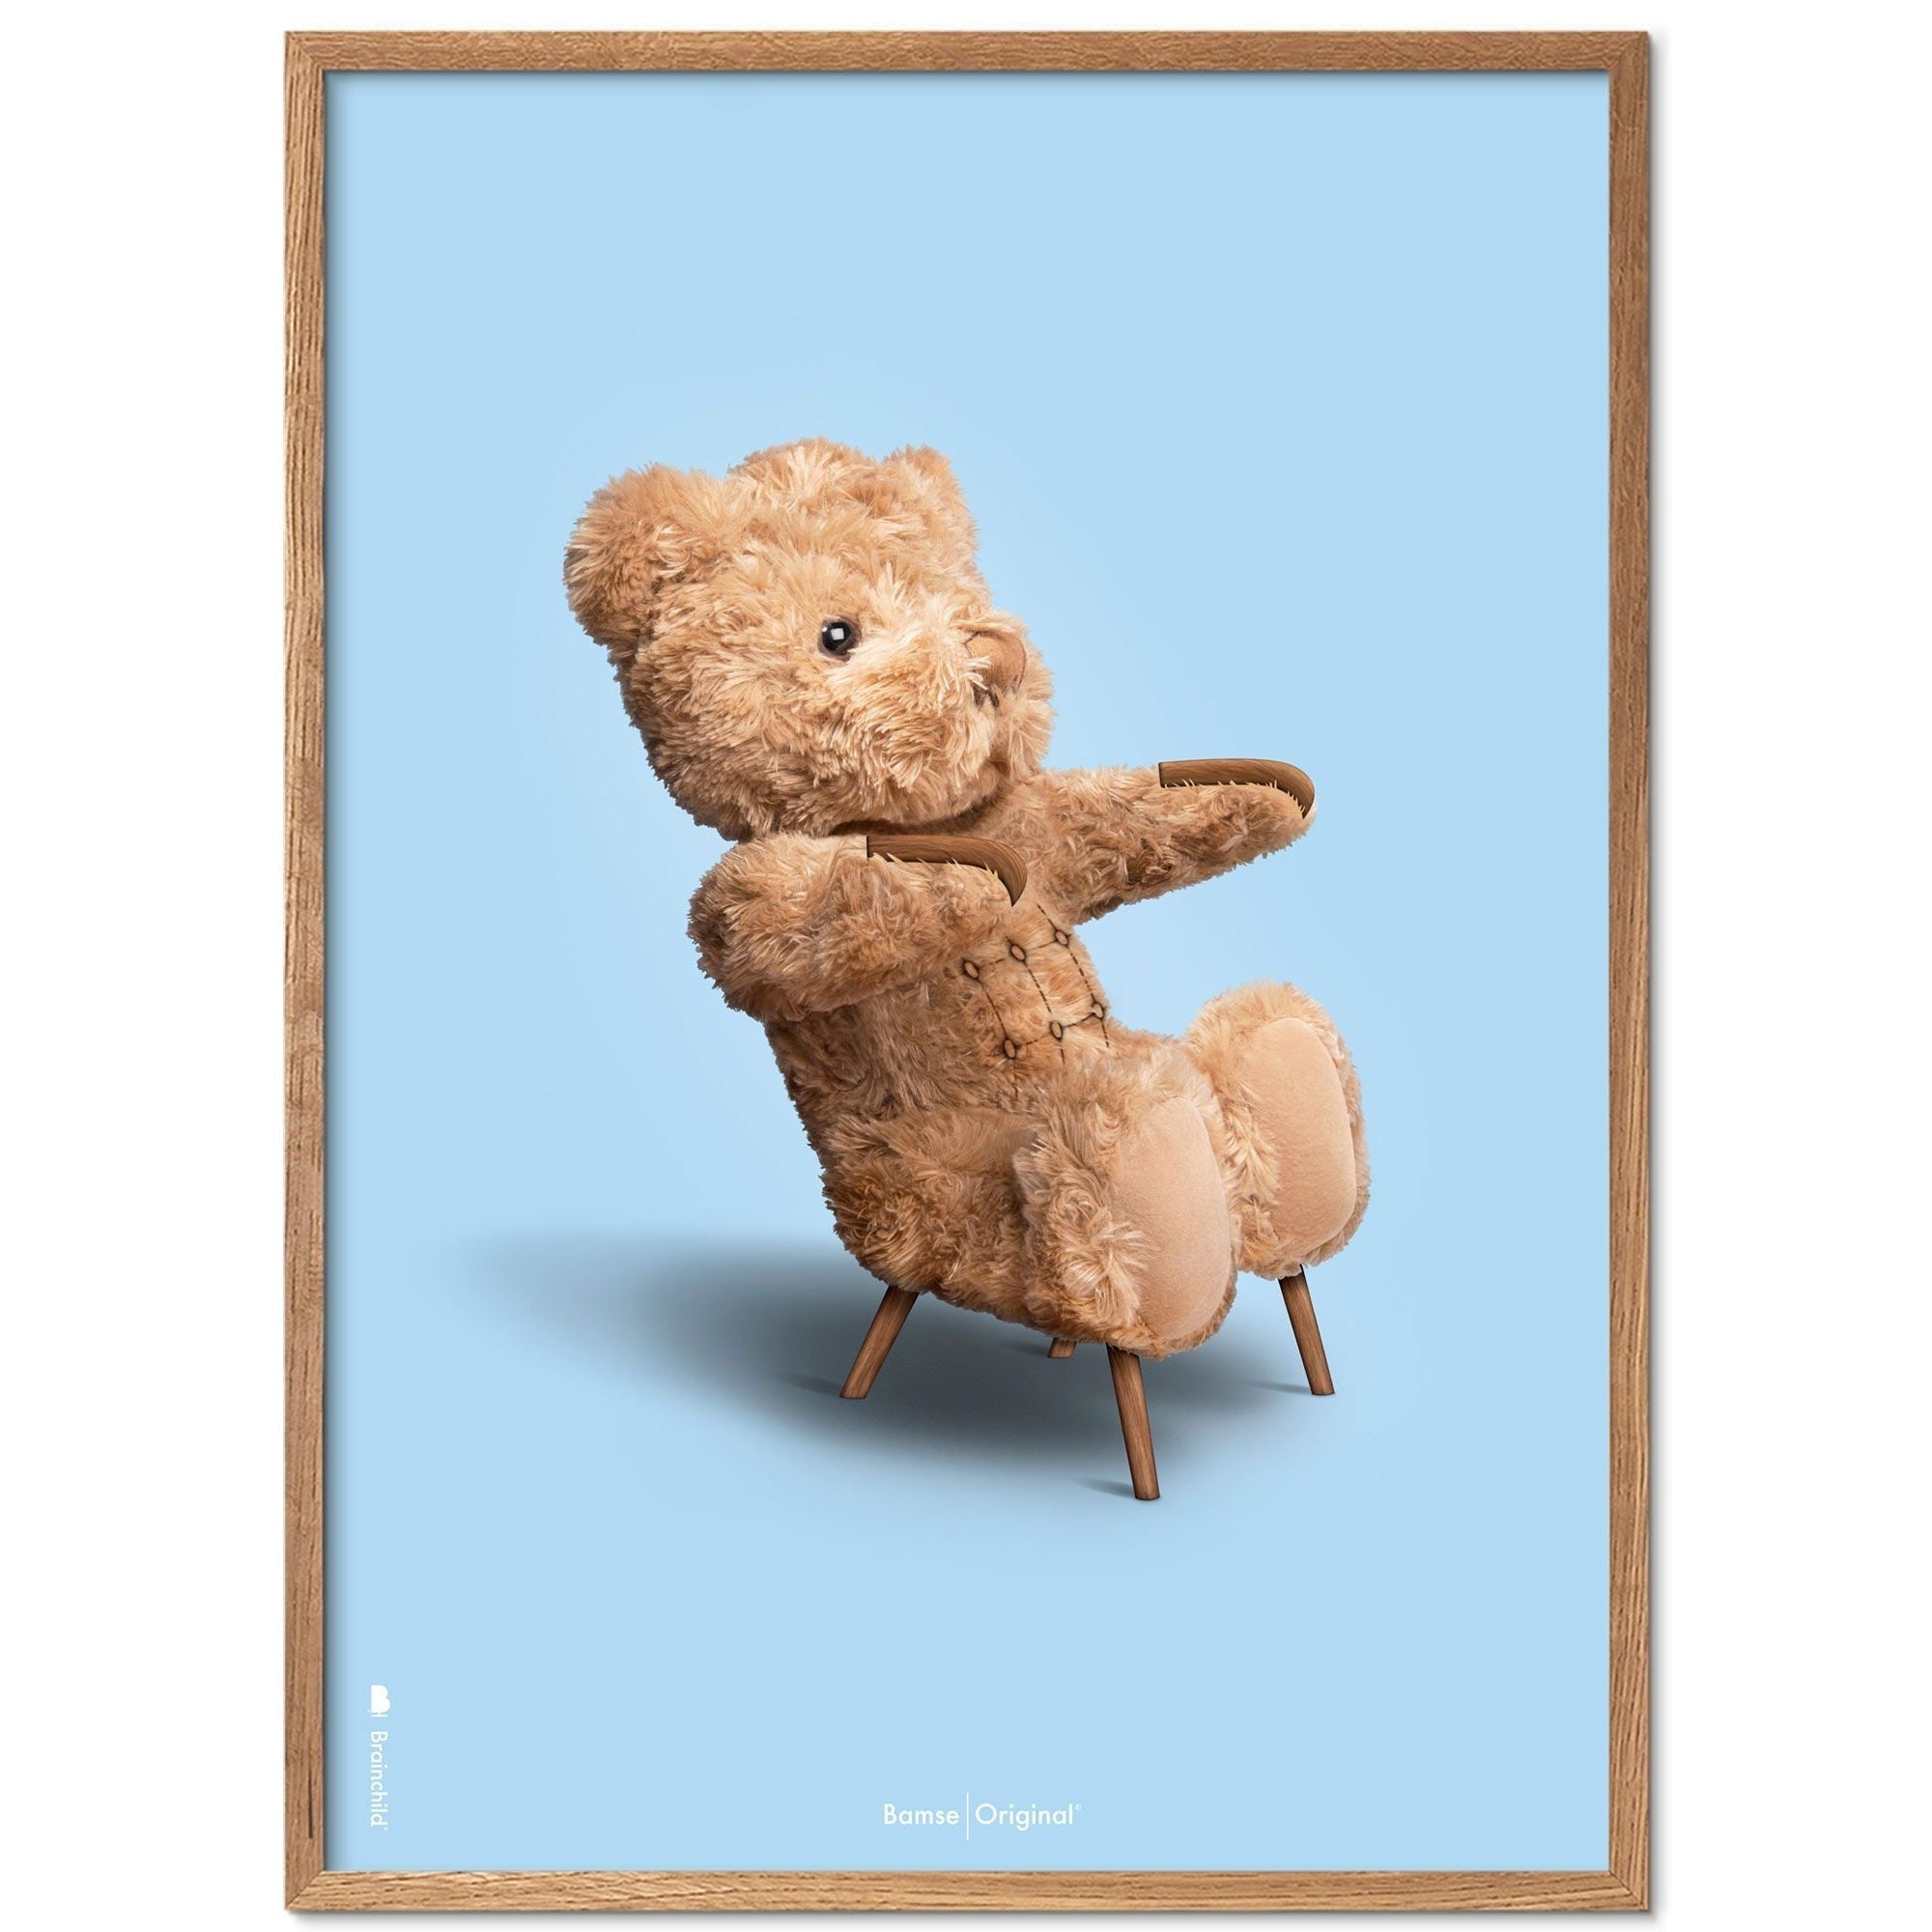 Marco de póster clásico de BrainChild Teddy Bear Hecho de rama de madera clara 50x70 cm, fondo azul claro